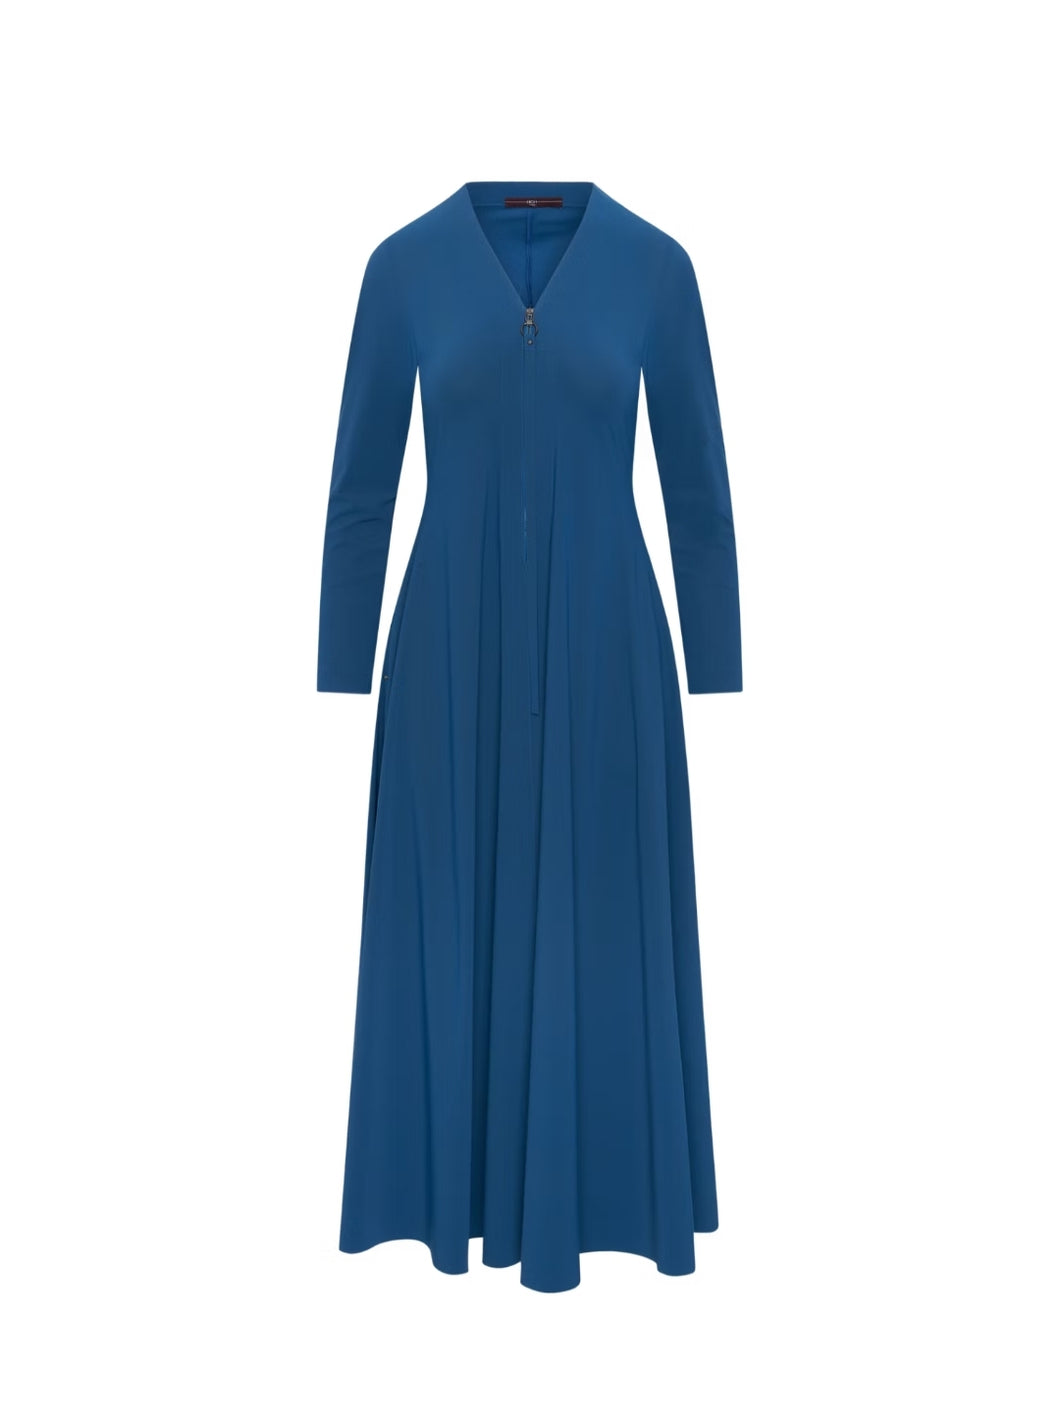 HIGH TECH GARLAND Mittelblaues Maxi-Kleid mit Reißverschluss auf der Vorderseite